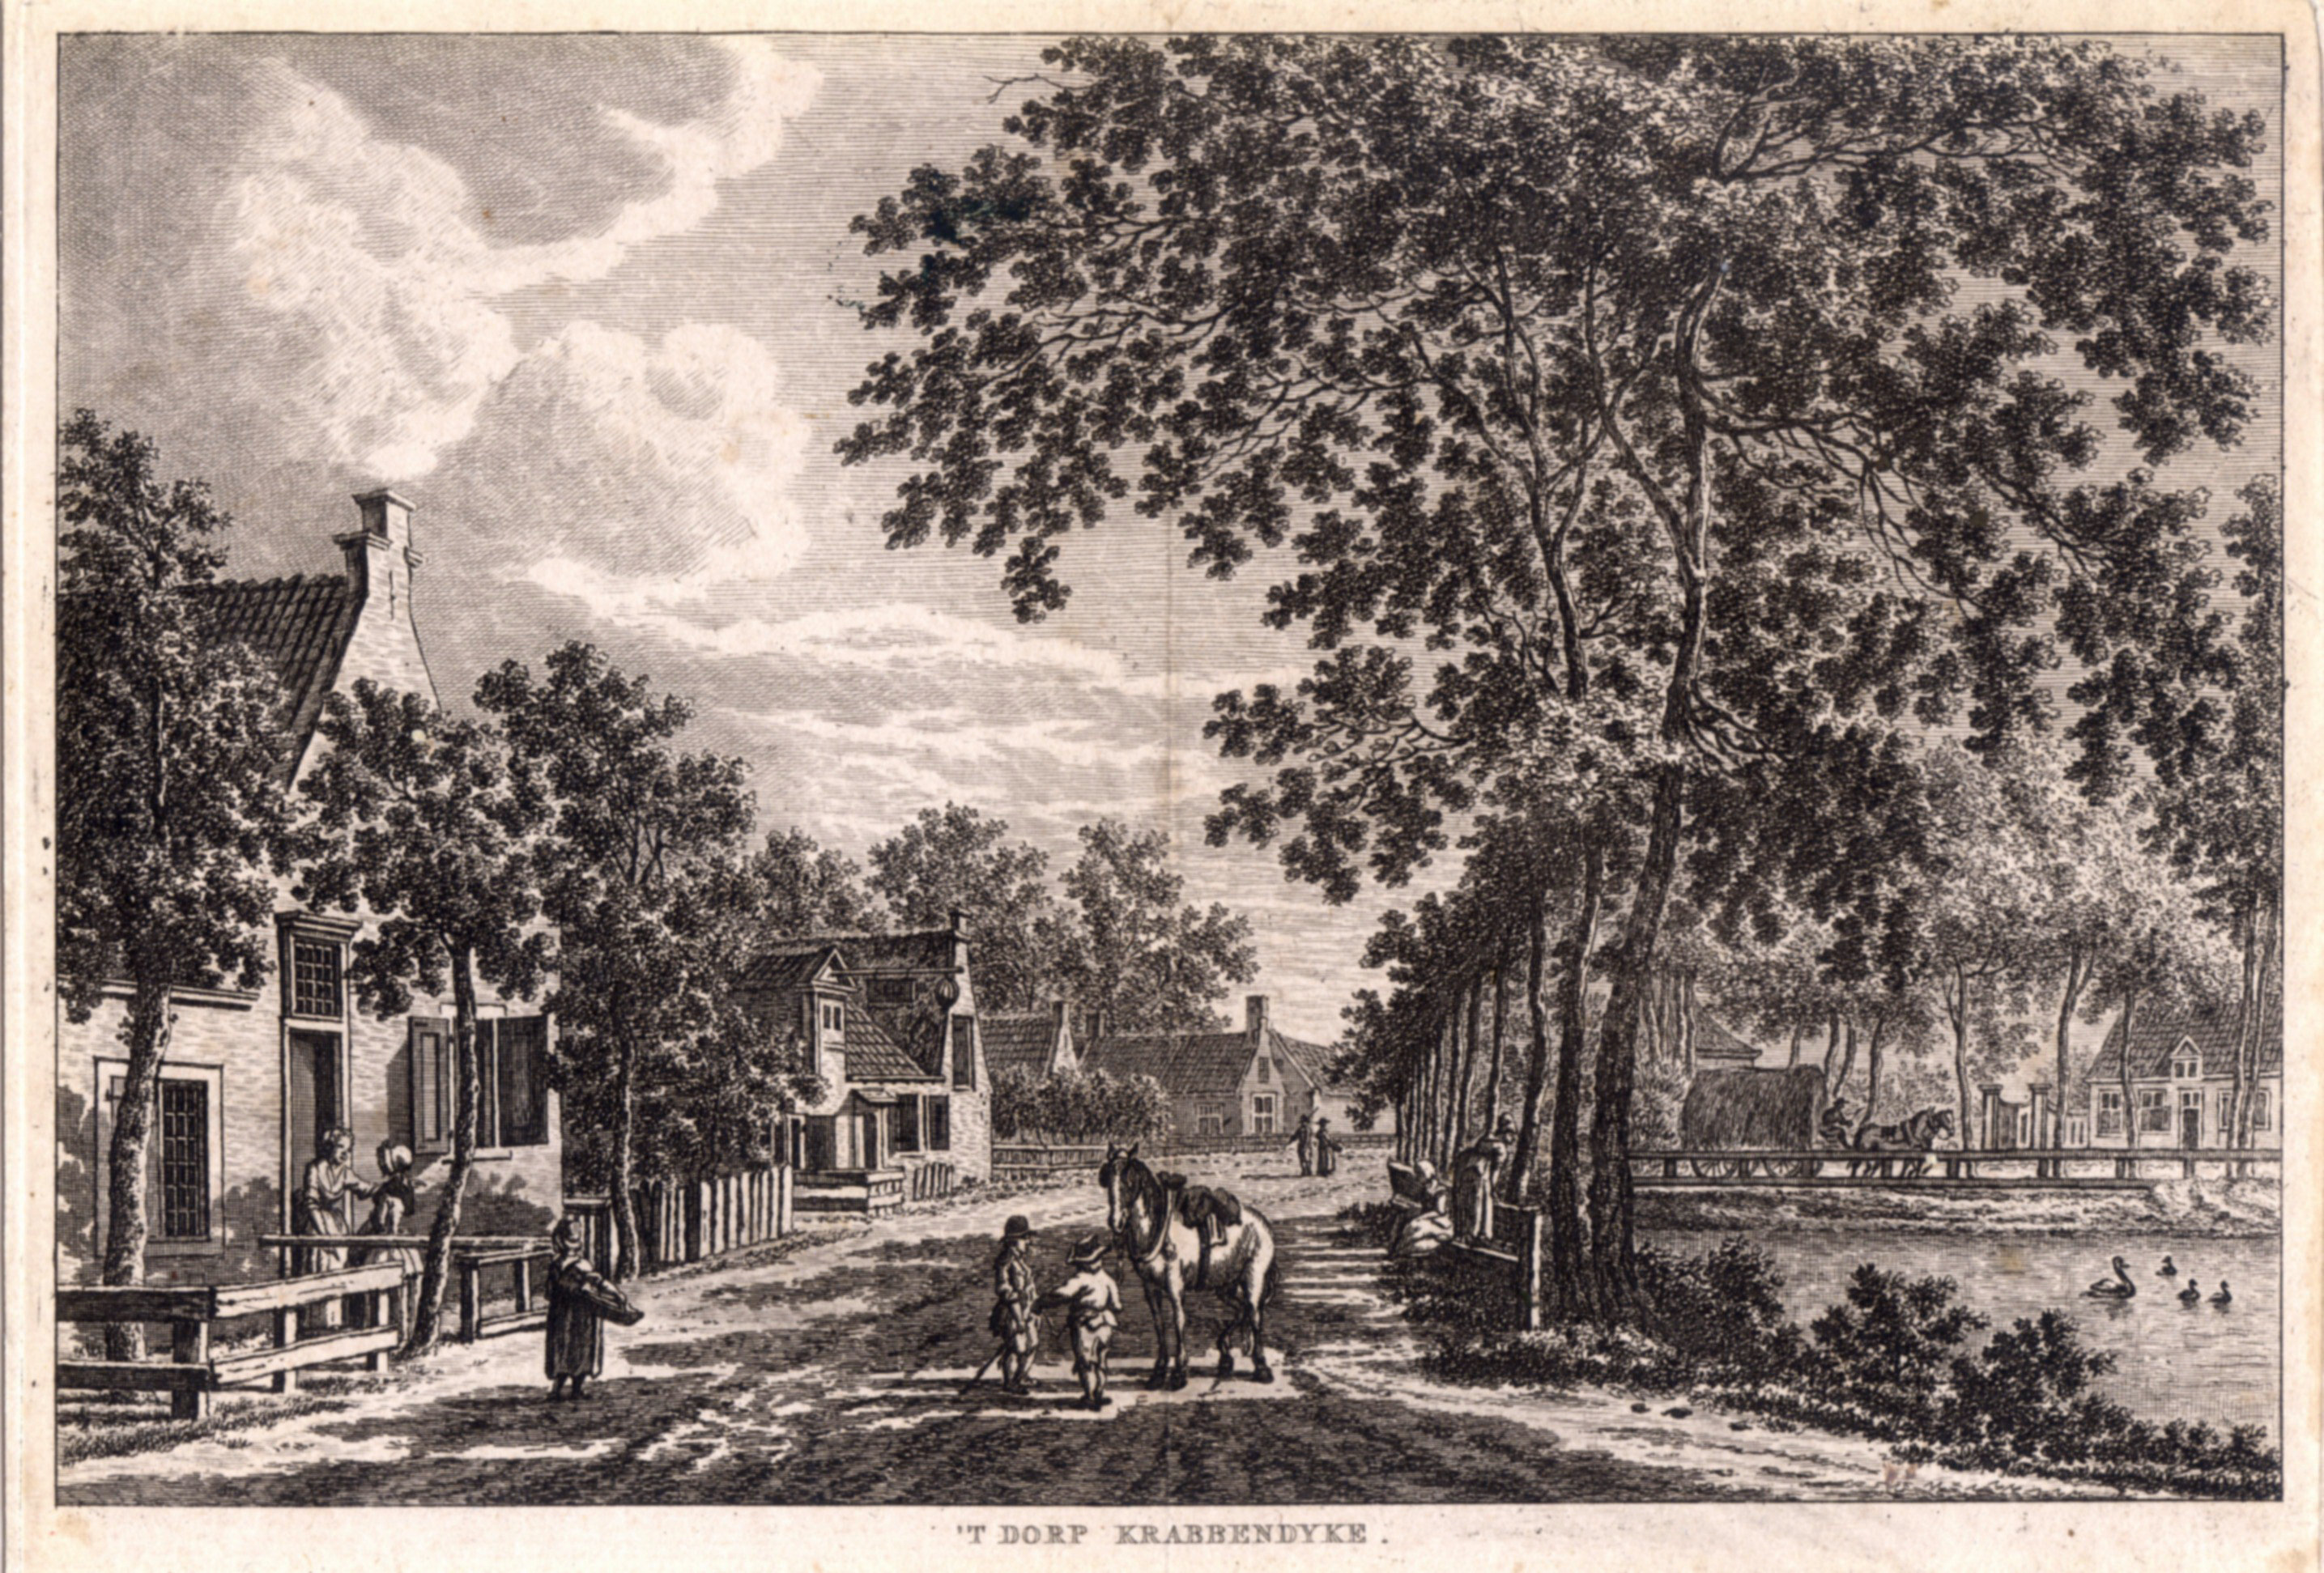 De dorpsstraat van Krabbendijke, midden 18e eeuw.